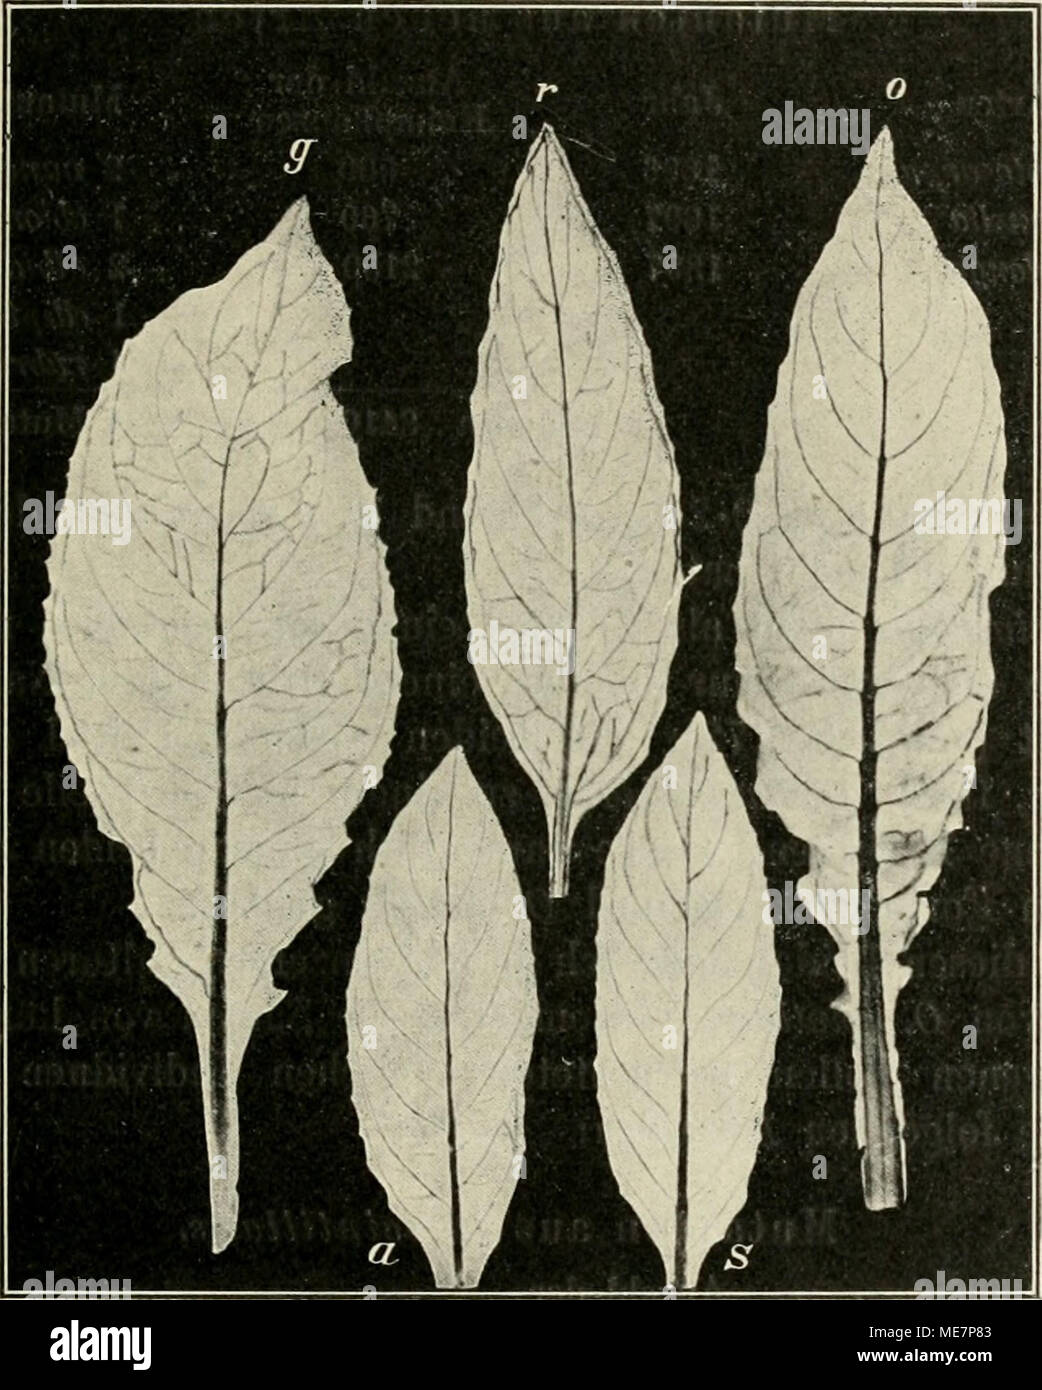 . Die mutationstheorie. Versuche und beobachtungen über die entstehung von arten im pflanzenreich . Fig. 54. Stengelblätter blühender Pflanzen von g Oenothera gigas, r O. rubrinervis, 0 O. oblonga, a O, albida, s O. scintillans. Im Allgemeinen zeigten sich die neuen Arten viel weniger mu- tabel, als die ursprüngliche 0. Lamarckiana, aus der sie hervorgegangen sind. Doch giebt es auch gerade sehr stark mutable Formen unter ihnen, wie z. B. 0. scintillans. Bei Kreuzungen erhält sich die Mutabilität und wo aus Kreu- zungen die ursprüngliche Form, 0. Lamarckiana, hervorgeht, scheint sie solches mi Stock Photo